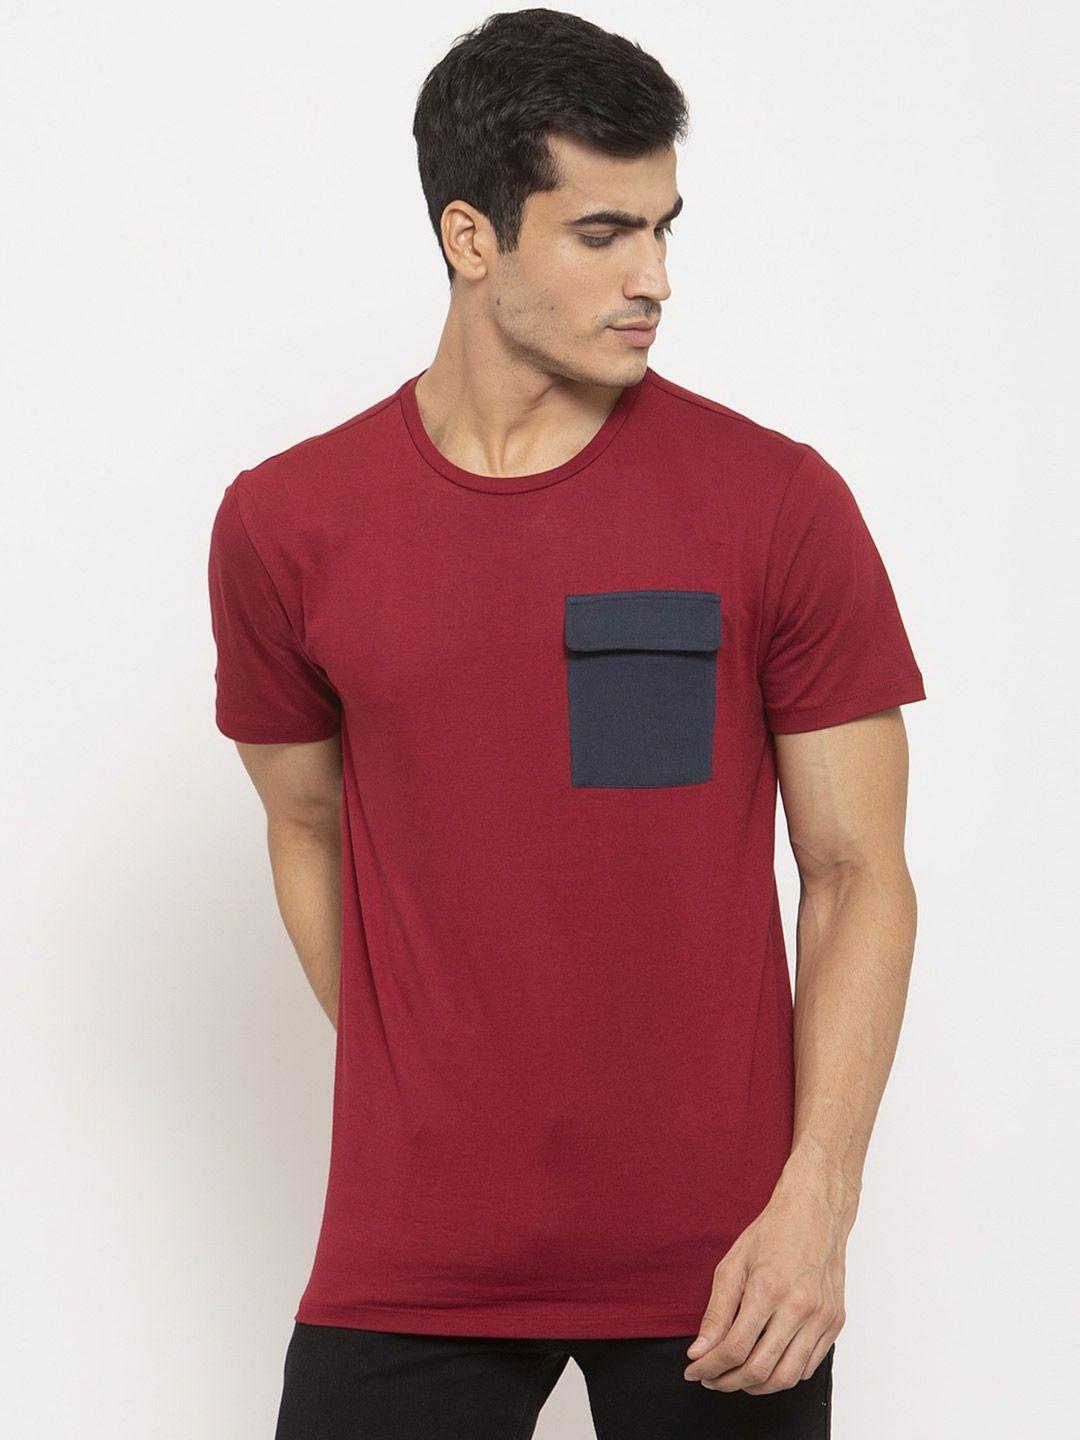 door74 men maroon pocket detailing cotton t-shirt